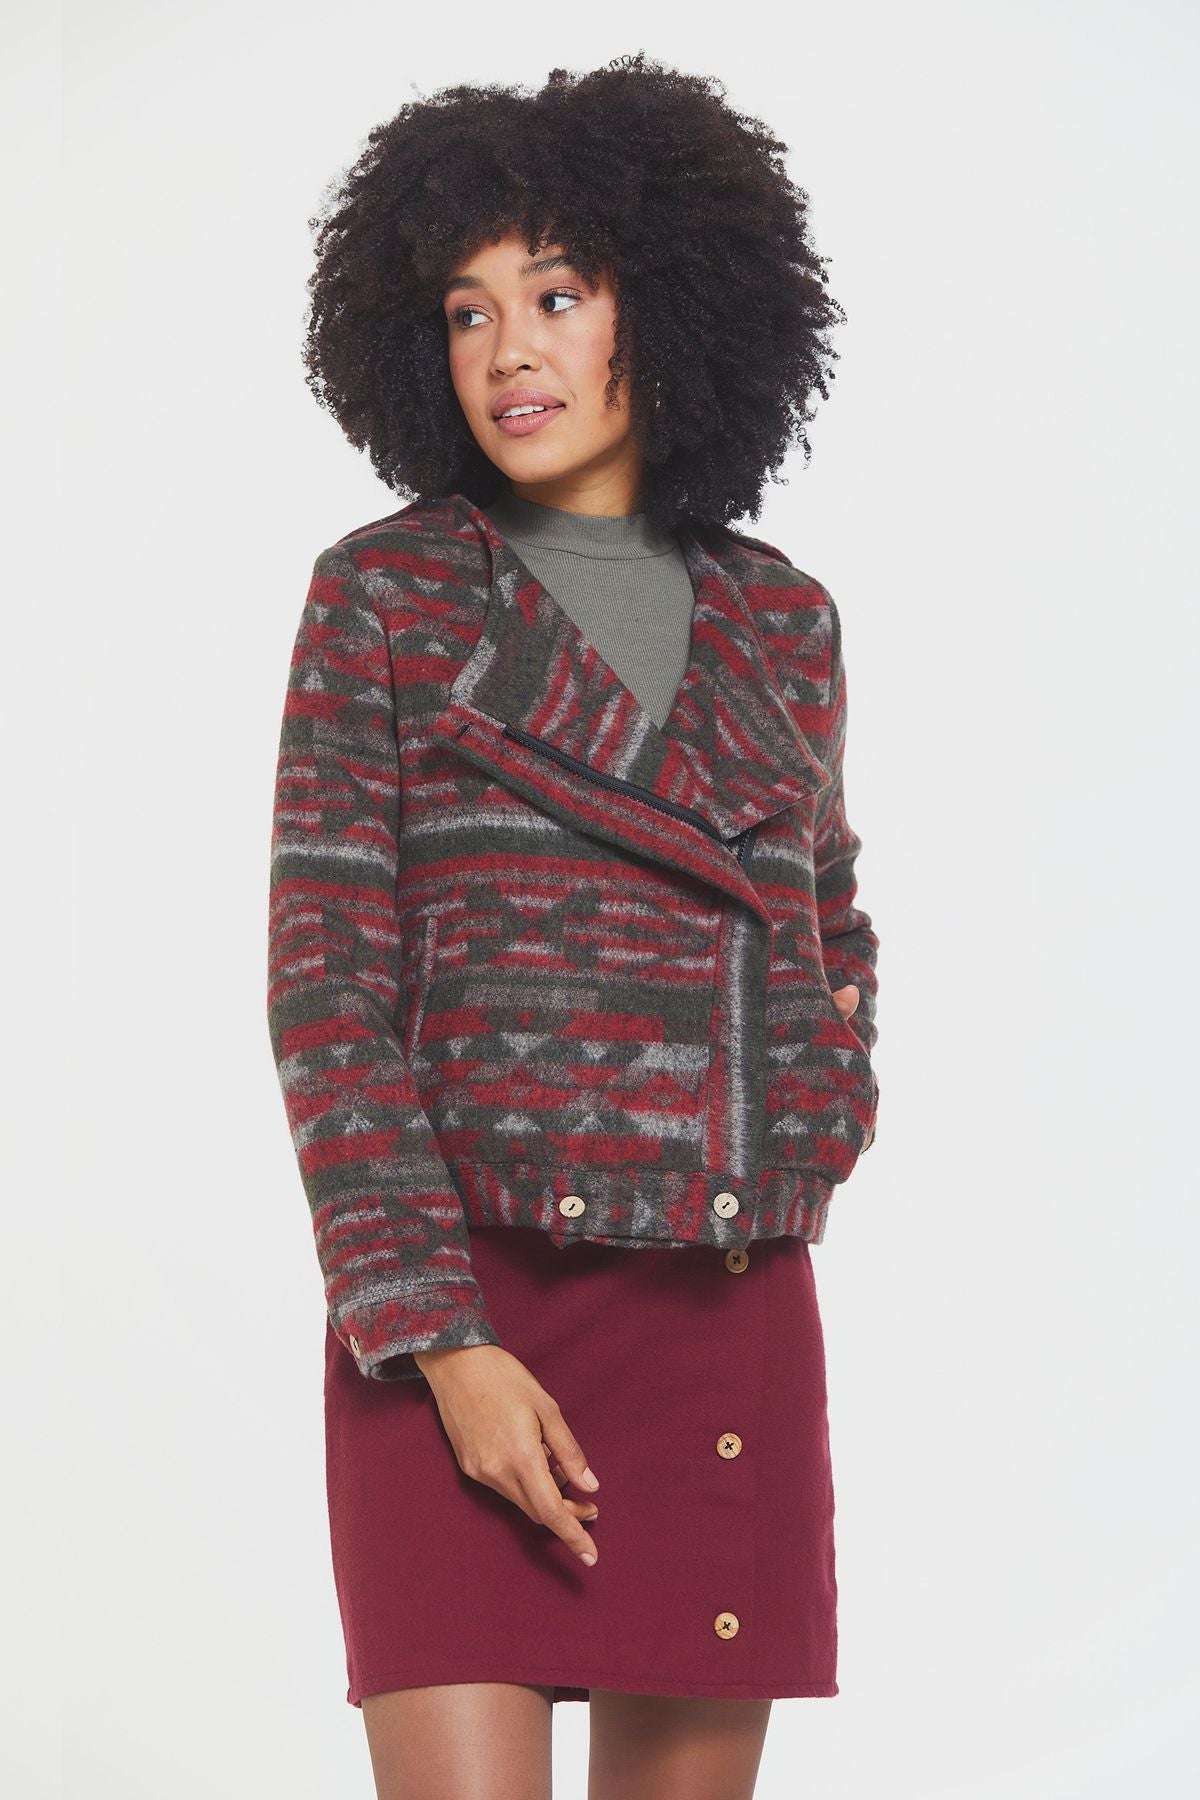 Ethnic Patterned Women's Jacket with Lining Khaki